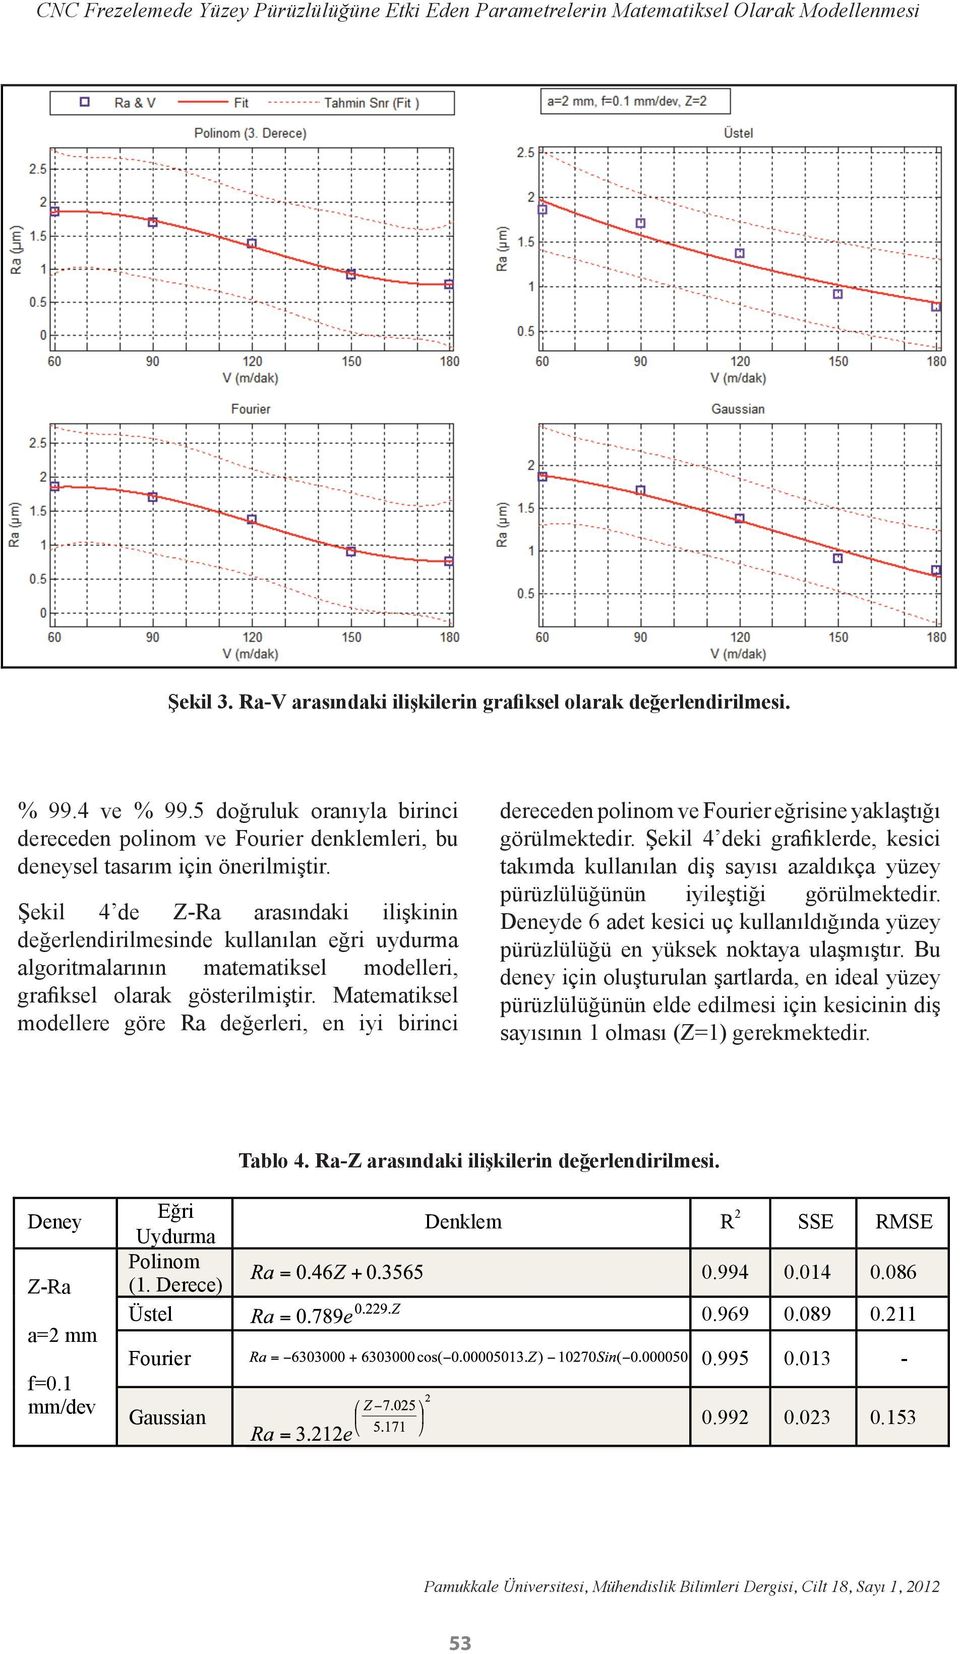 Şekil 4 de Z-Ra arasındaki ilişkinin değerlendirilmesinde kullanılan eğri uydurma algoritmalarının matematiksel modelleri, grafiksel olarak gösterilmiştir.